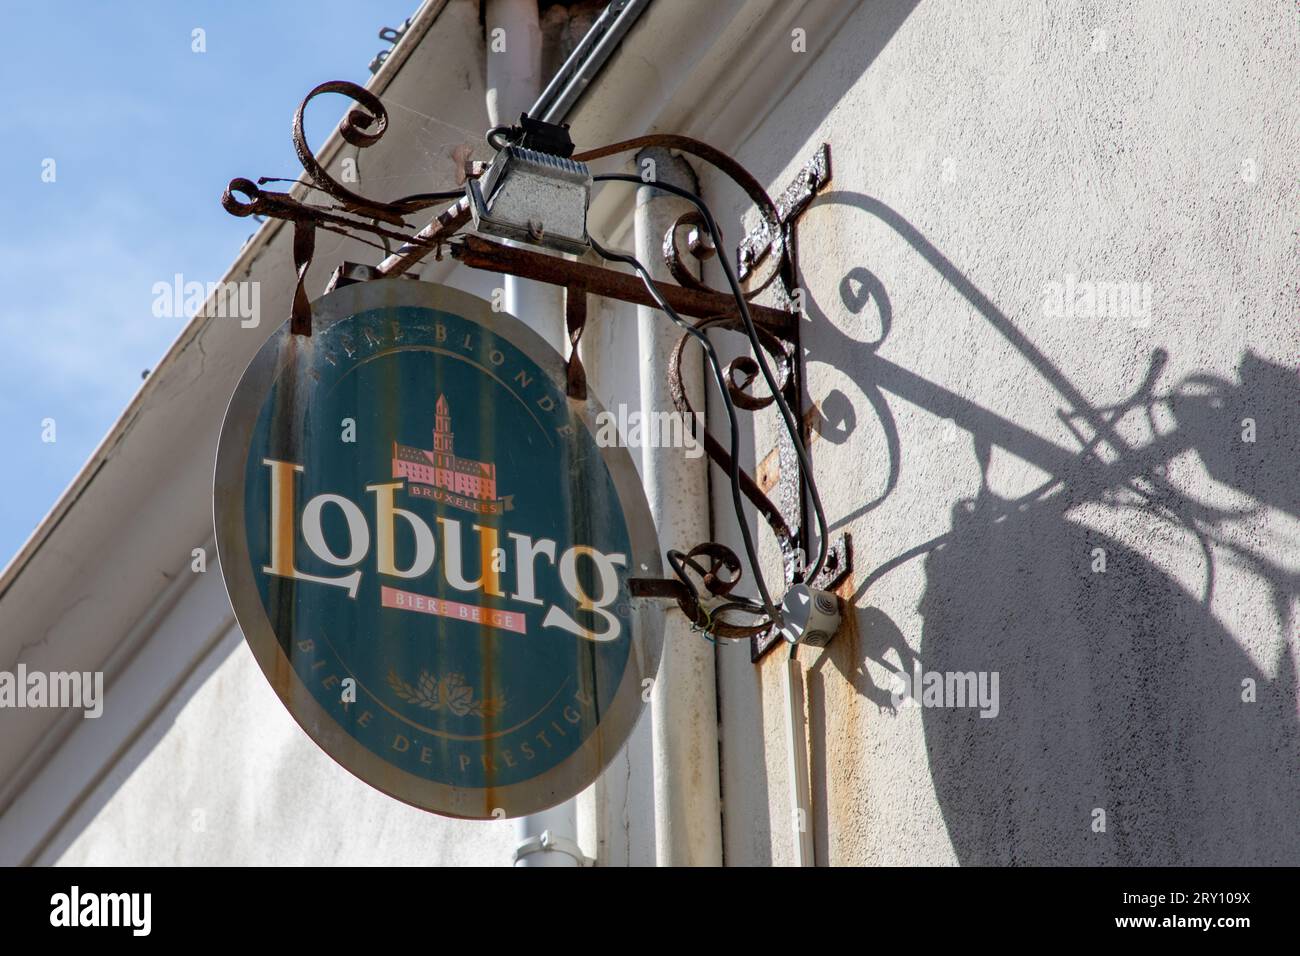 Bordeaux , Francia - 09 12 2023: Logo della birra Loburg pils, marchio e cartello sulla facciata sul muro del bar del ristorante Foto Stock